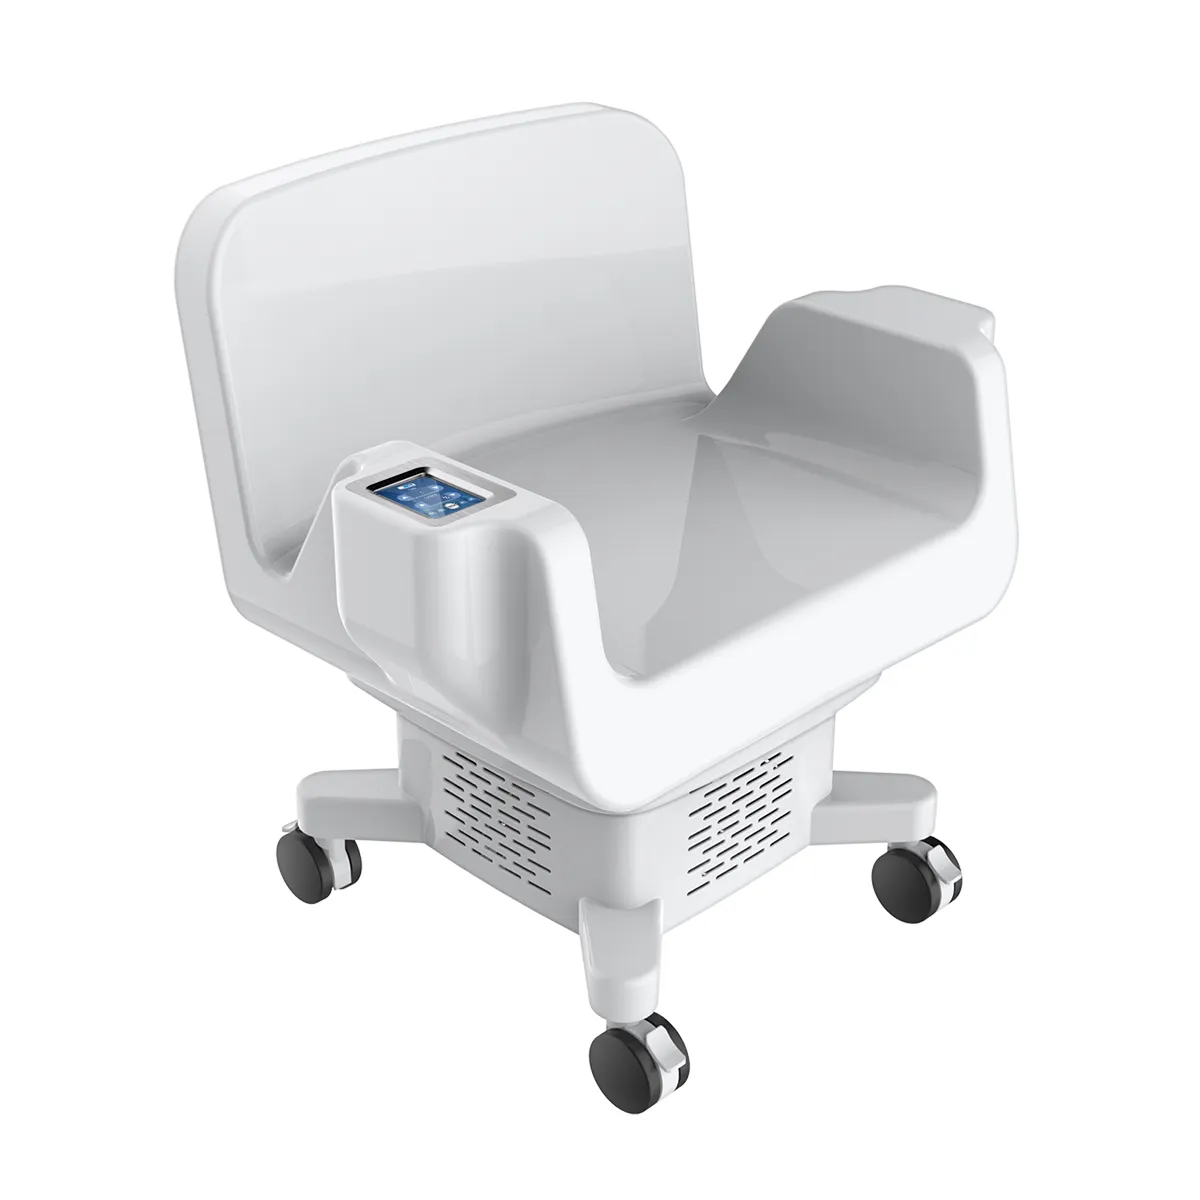 2022 Fast Body Slimming Sculptinsg Chair EMS Stimulation musculaire Abs Équipement d'entraînement Fat Burn Muscle Stimulatior Réparation post-partum Salut-emt chaise de plancher pelvien